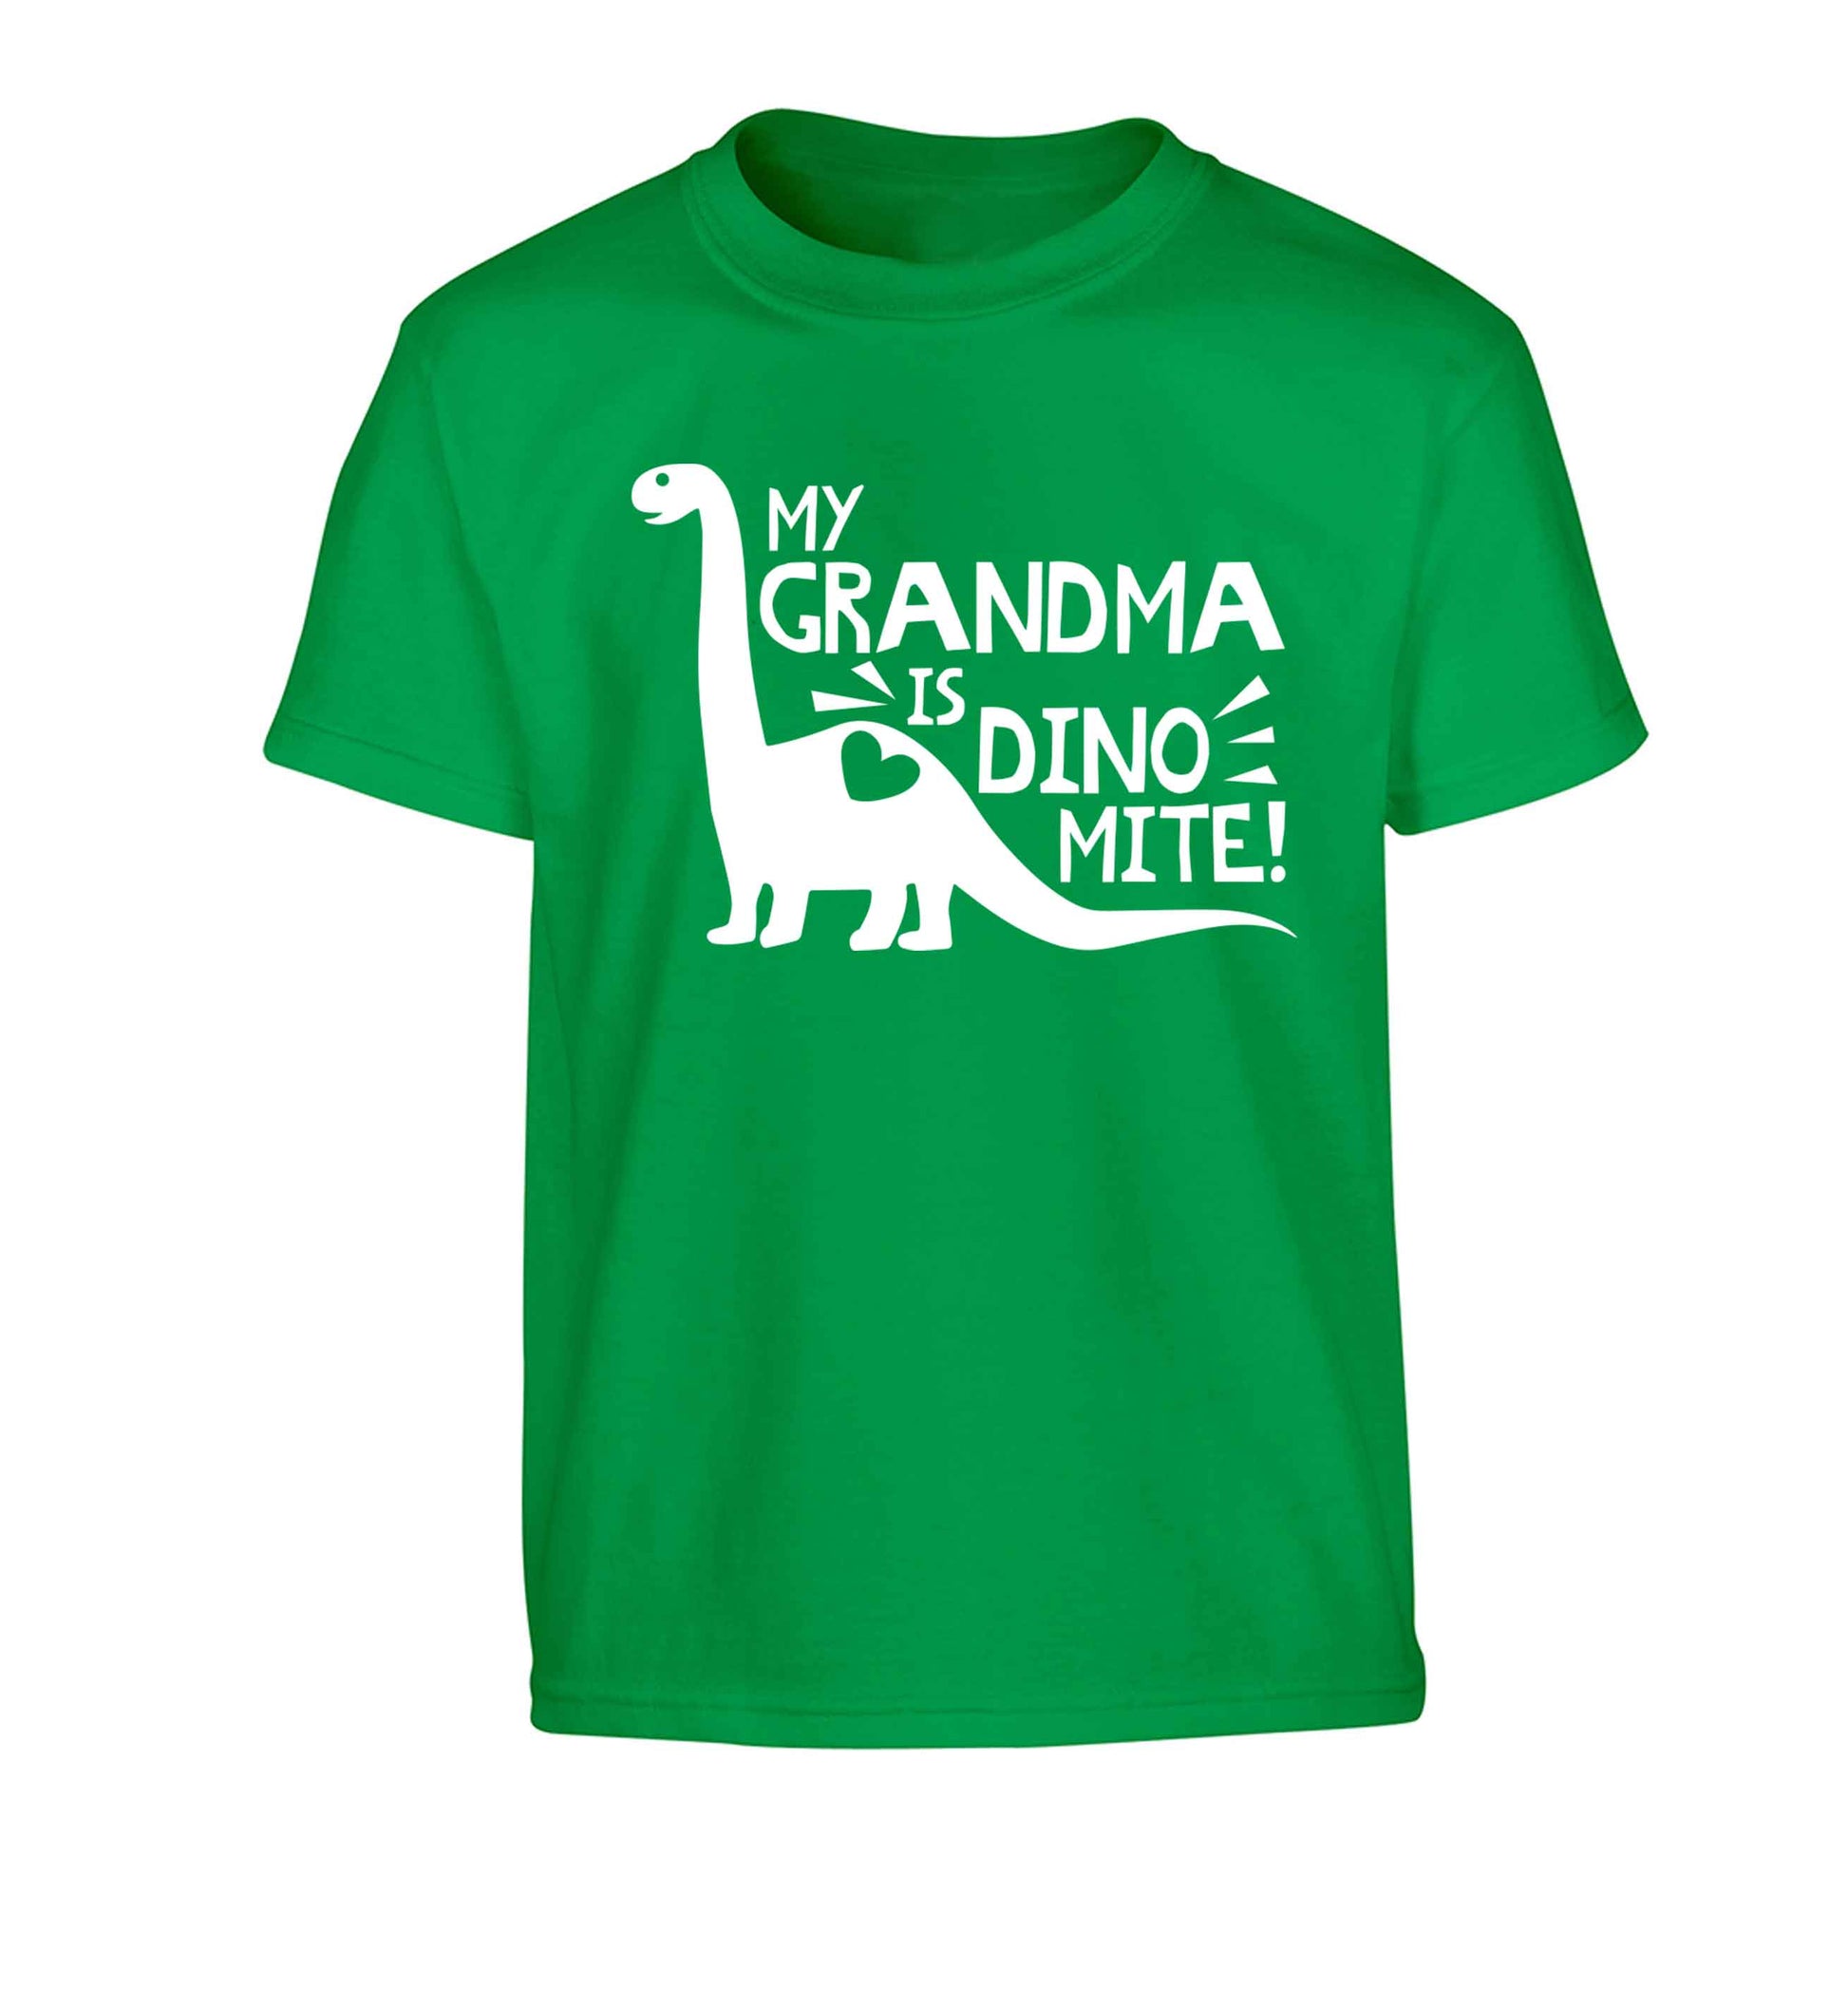 My grandma is dinomite! Children's green Tshirt 12-13 Years